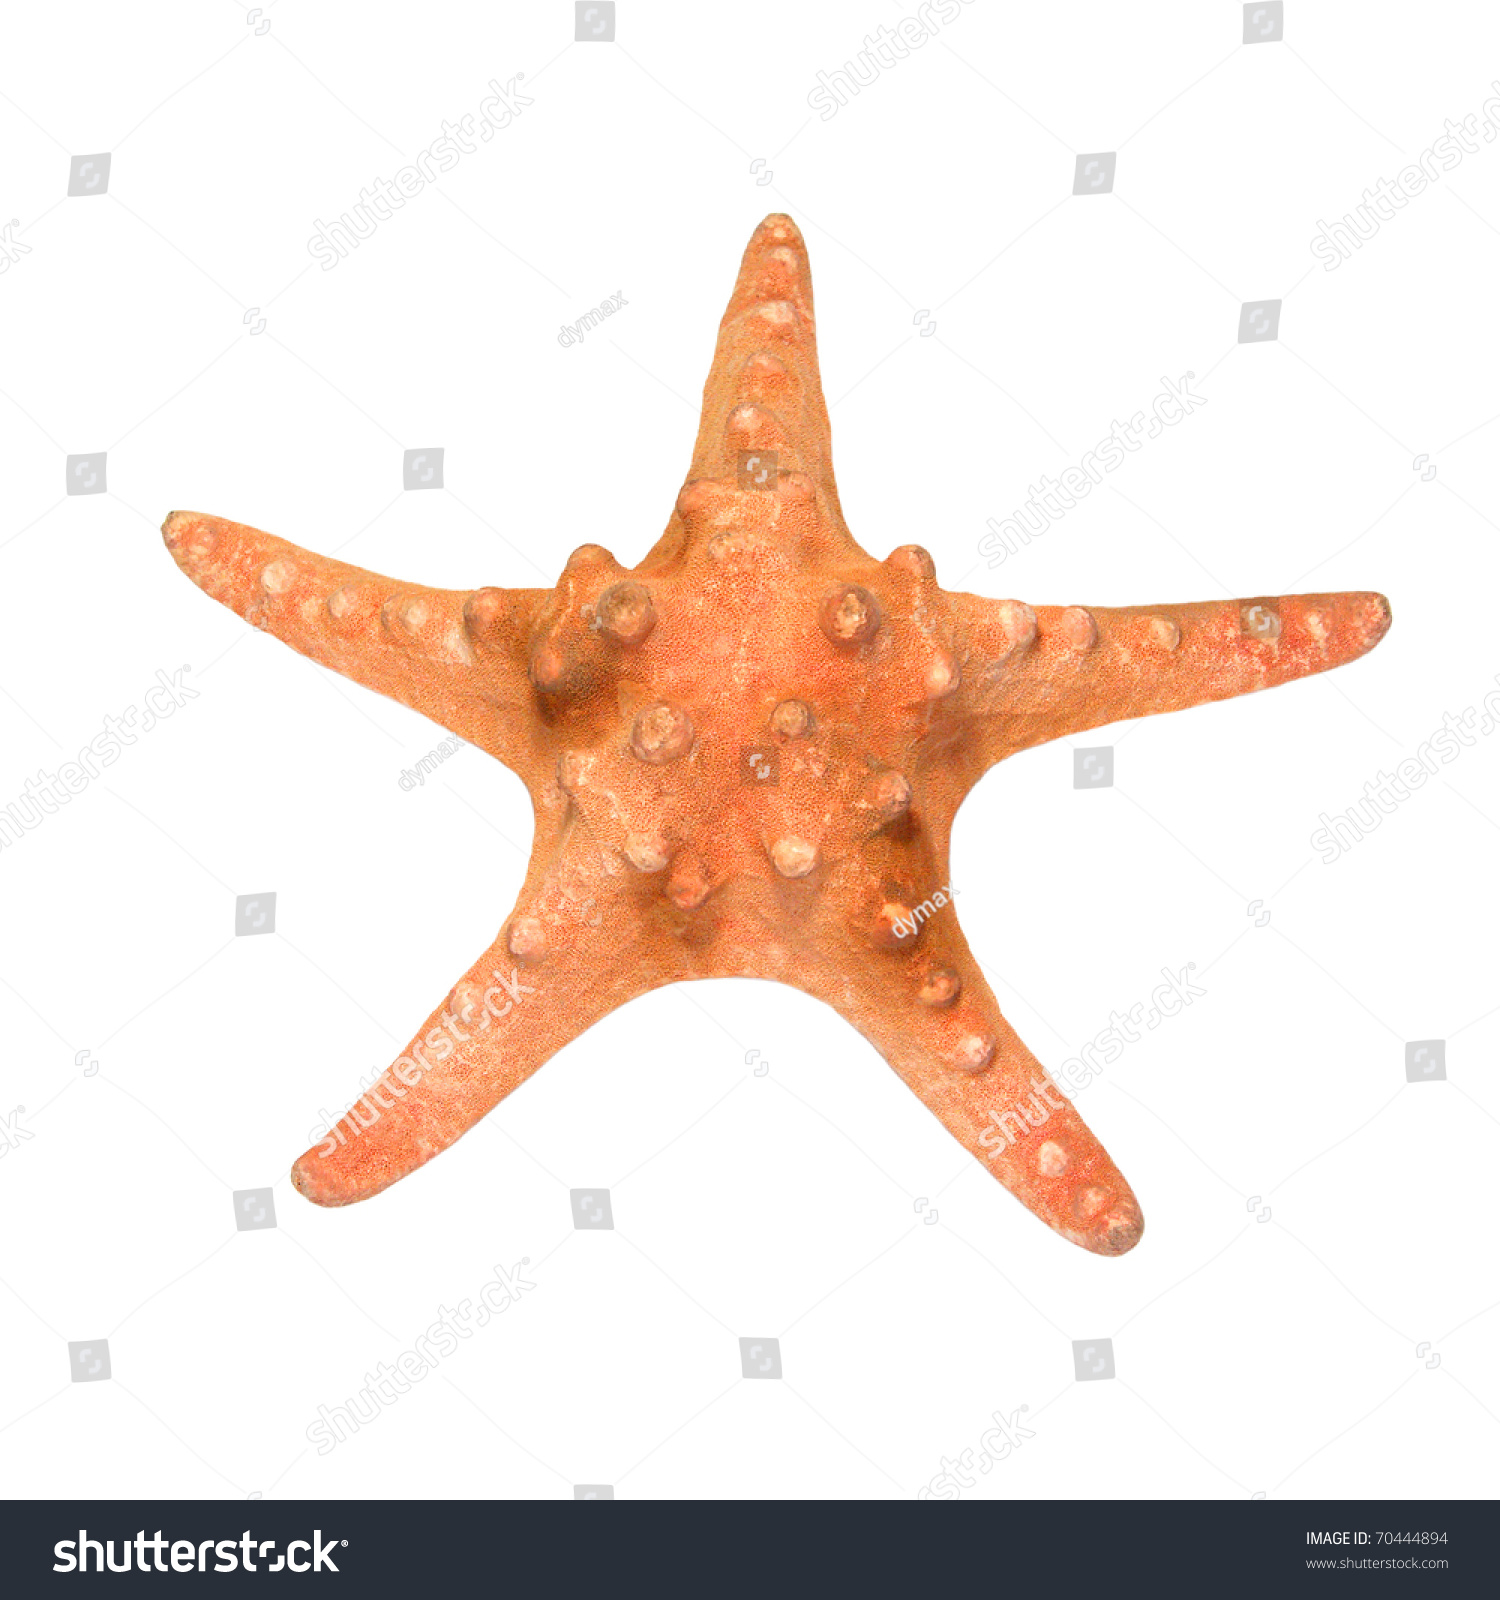 Orange Starfish Isolated Over White Stock Photo 70444894 - Shutterstock